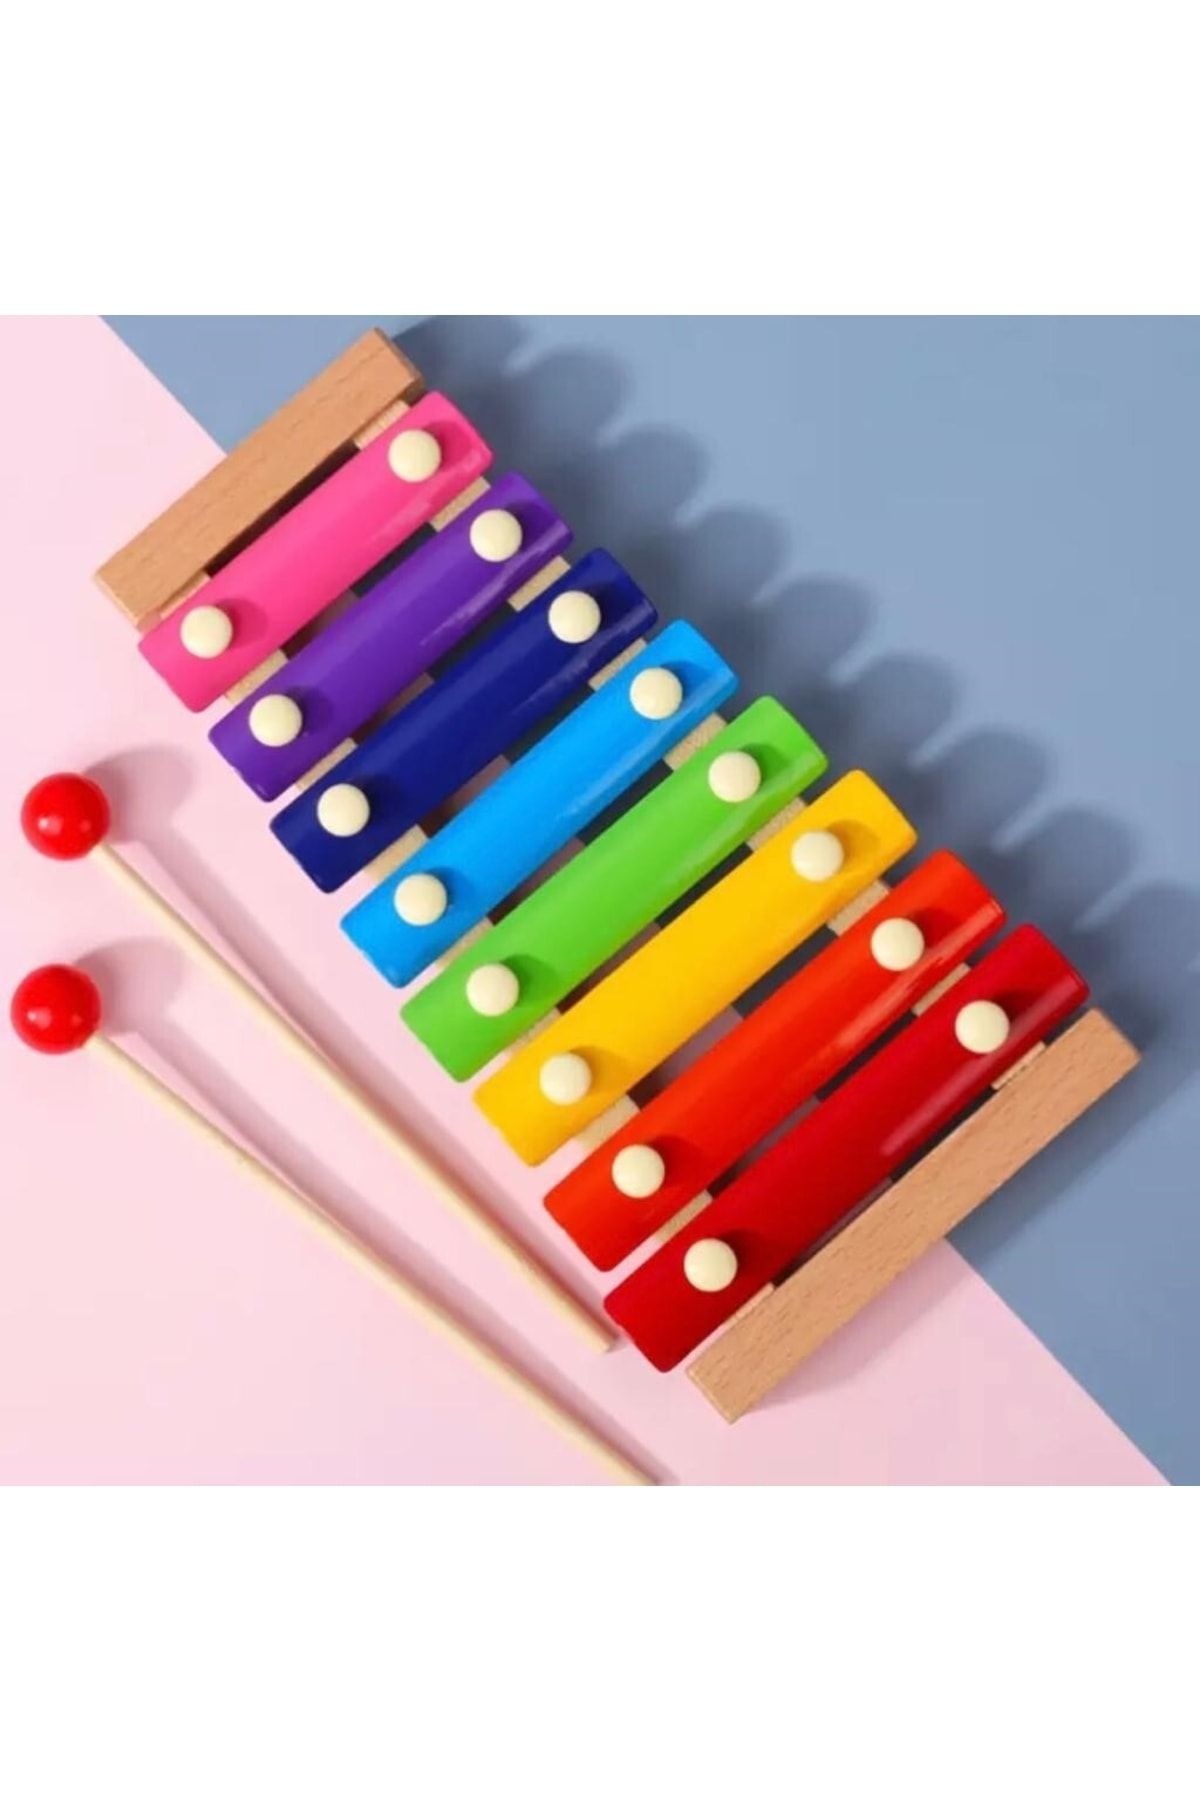 SAMTOYS Wooden Toys Montessori Renkli 8 Nota 8 Ton Ahşap Ksilofon Selefon Ksilafon Tuşlu Sesli Müzik Aleti